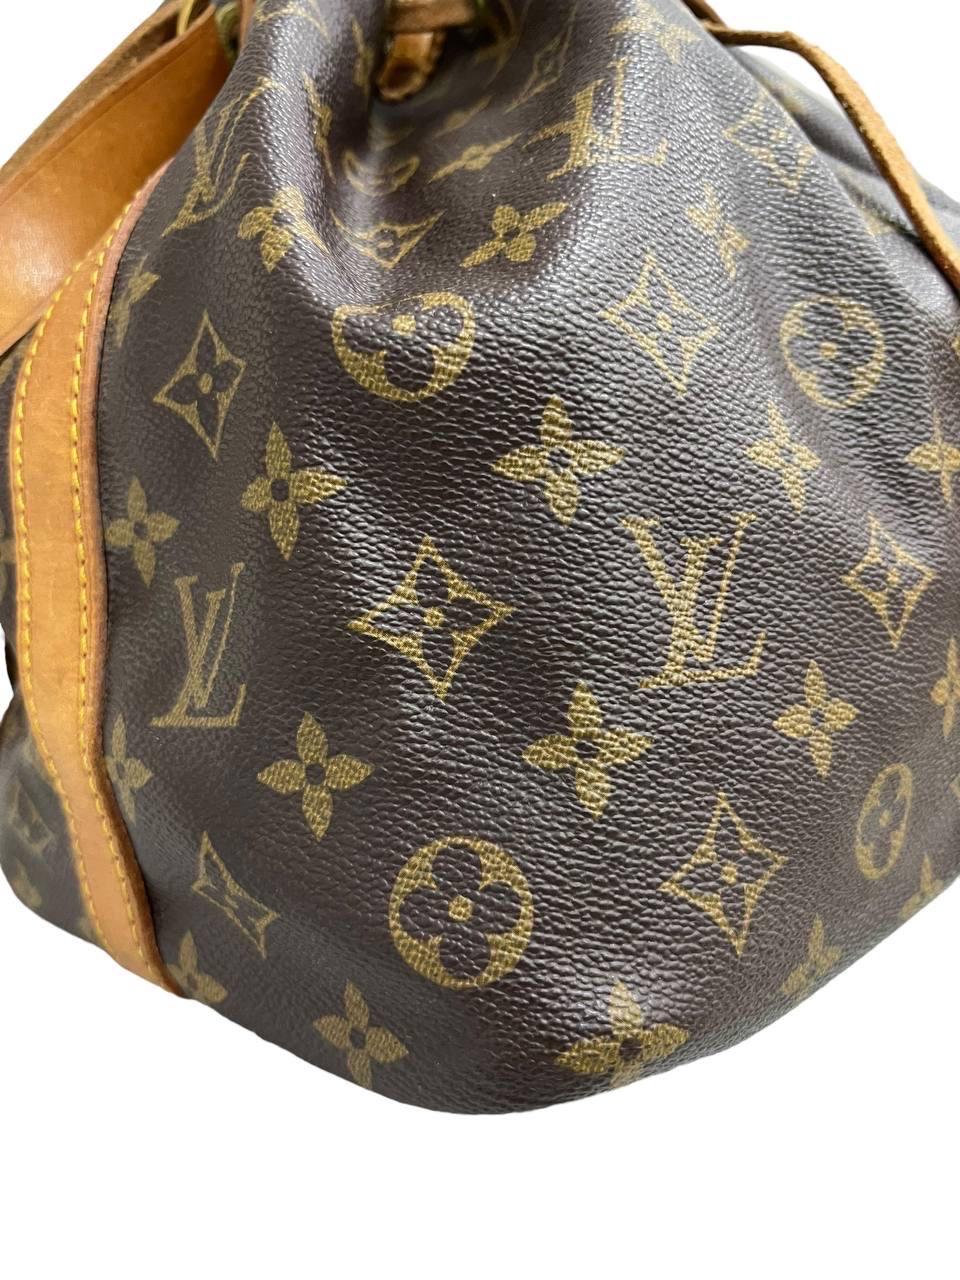 Louis Vuitton-Firmentasche, Modell Noè, Größe PM, aus klassischem Monogram-Tuch mit Einsätzen aus Vacchetta und verzierten Beschlägen. Sie ist mit einem oberen Abschluss mit Kragen versehen, der innen mit einem Marmorblock vernietet ist, der sehr